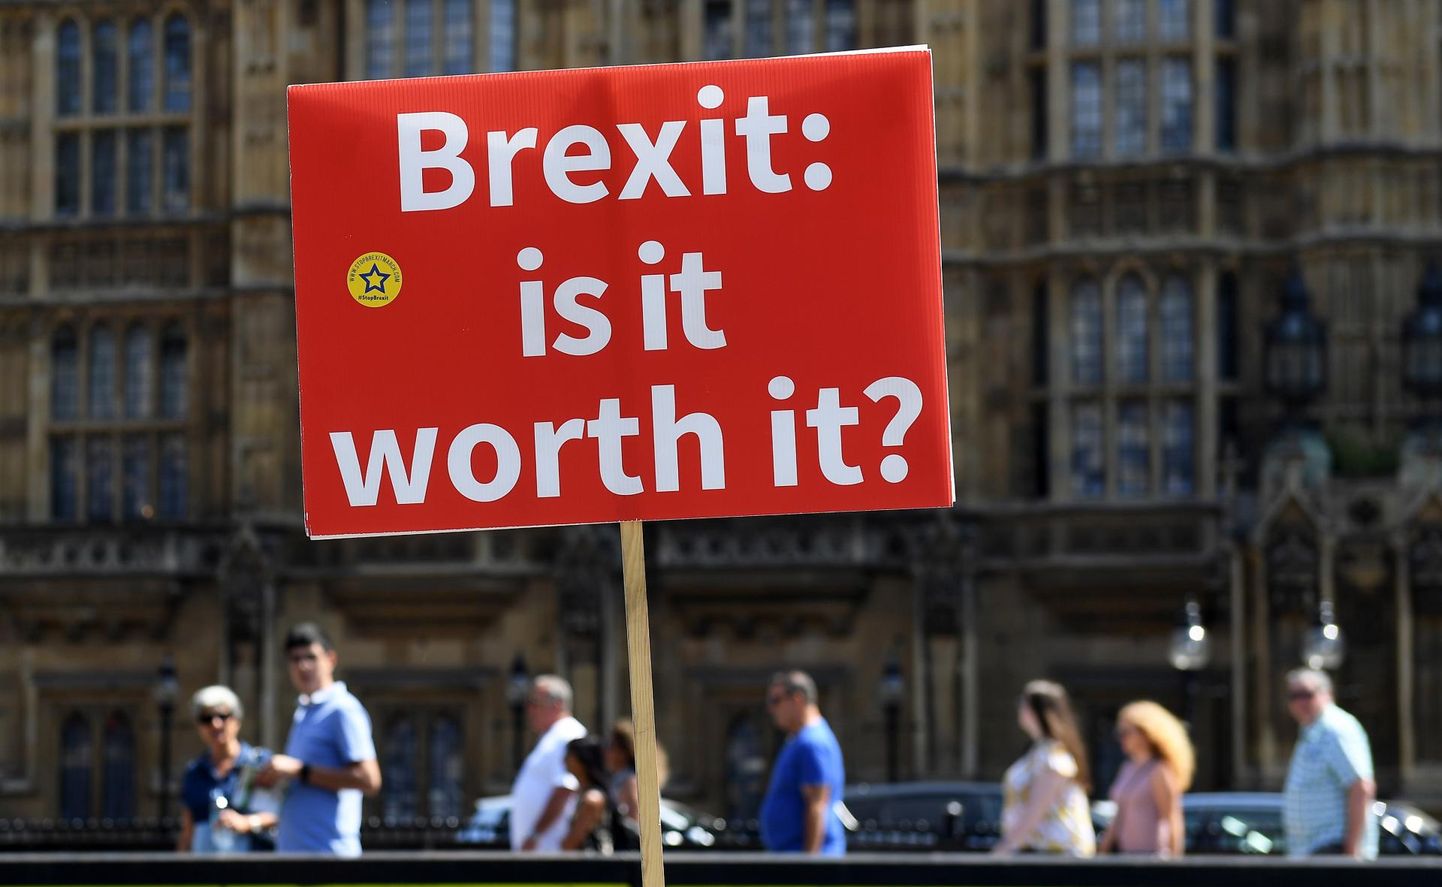 «Brexit. Kas see on seda väärt?» küsisid meeleavaldajad Londoni tänavatel.